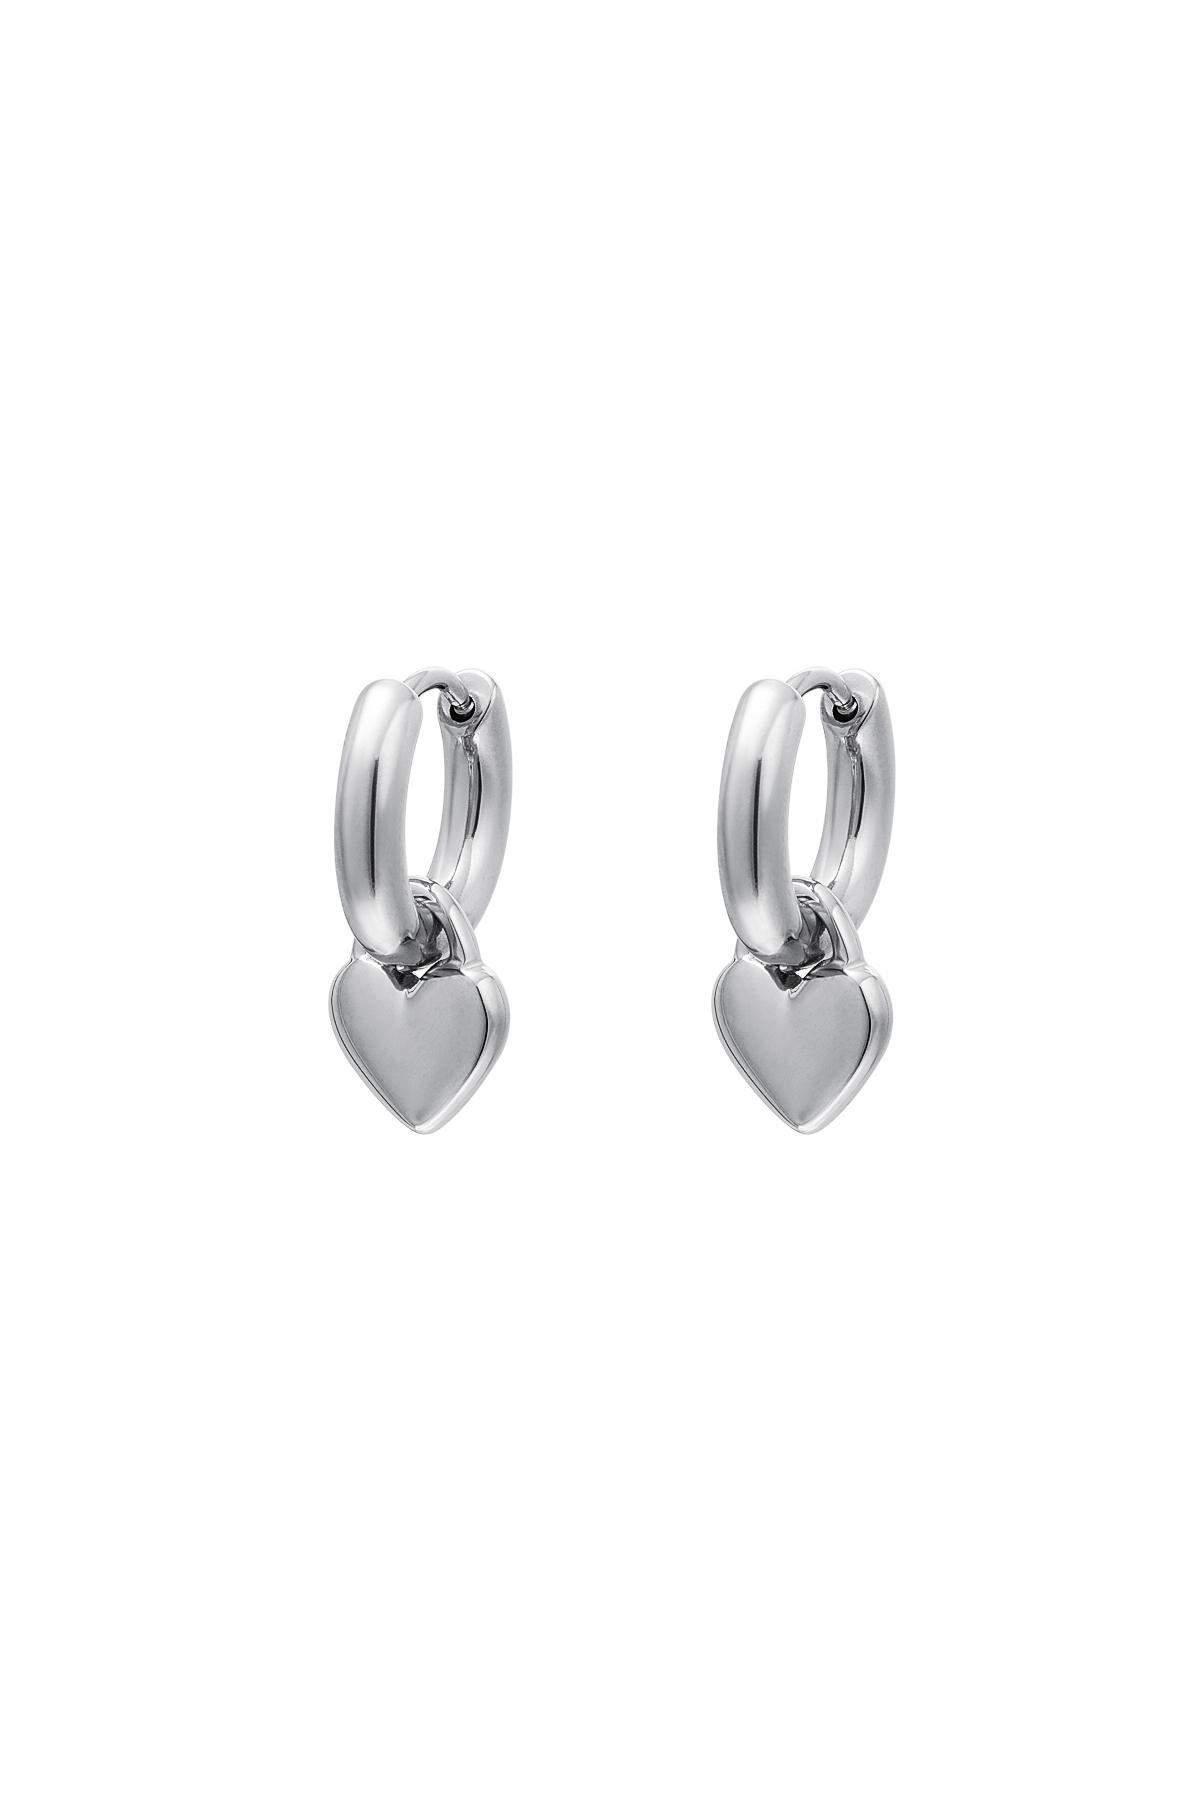 Heart earrings Silver Stainless Steel 